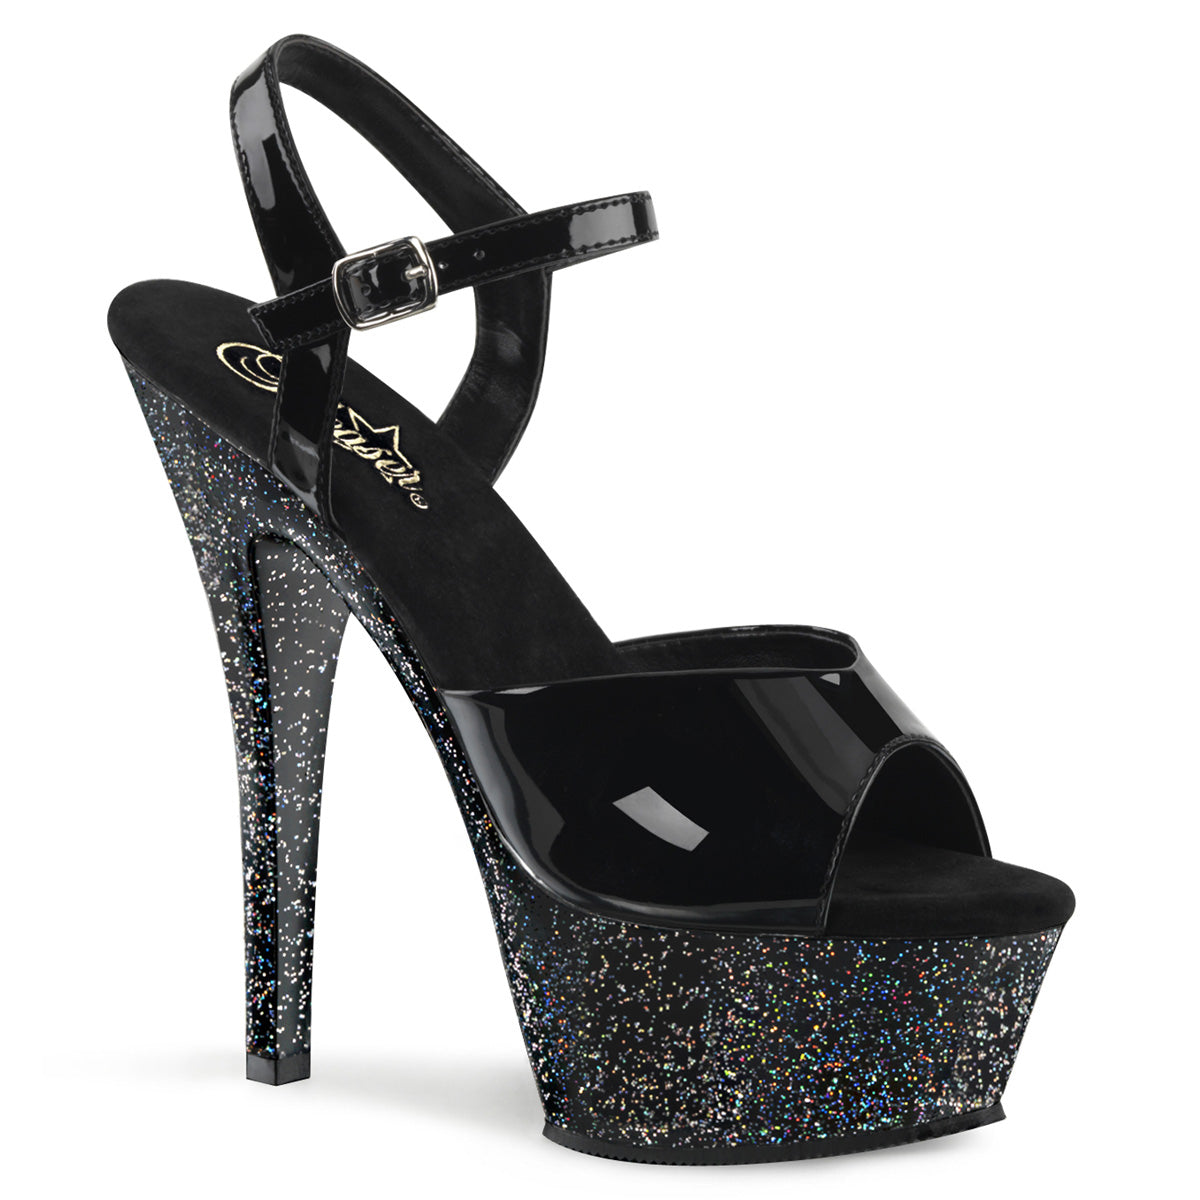 KISS-209MG Black Glitter Platform Sandals